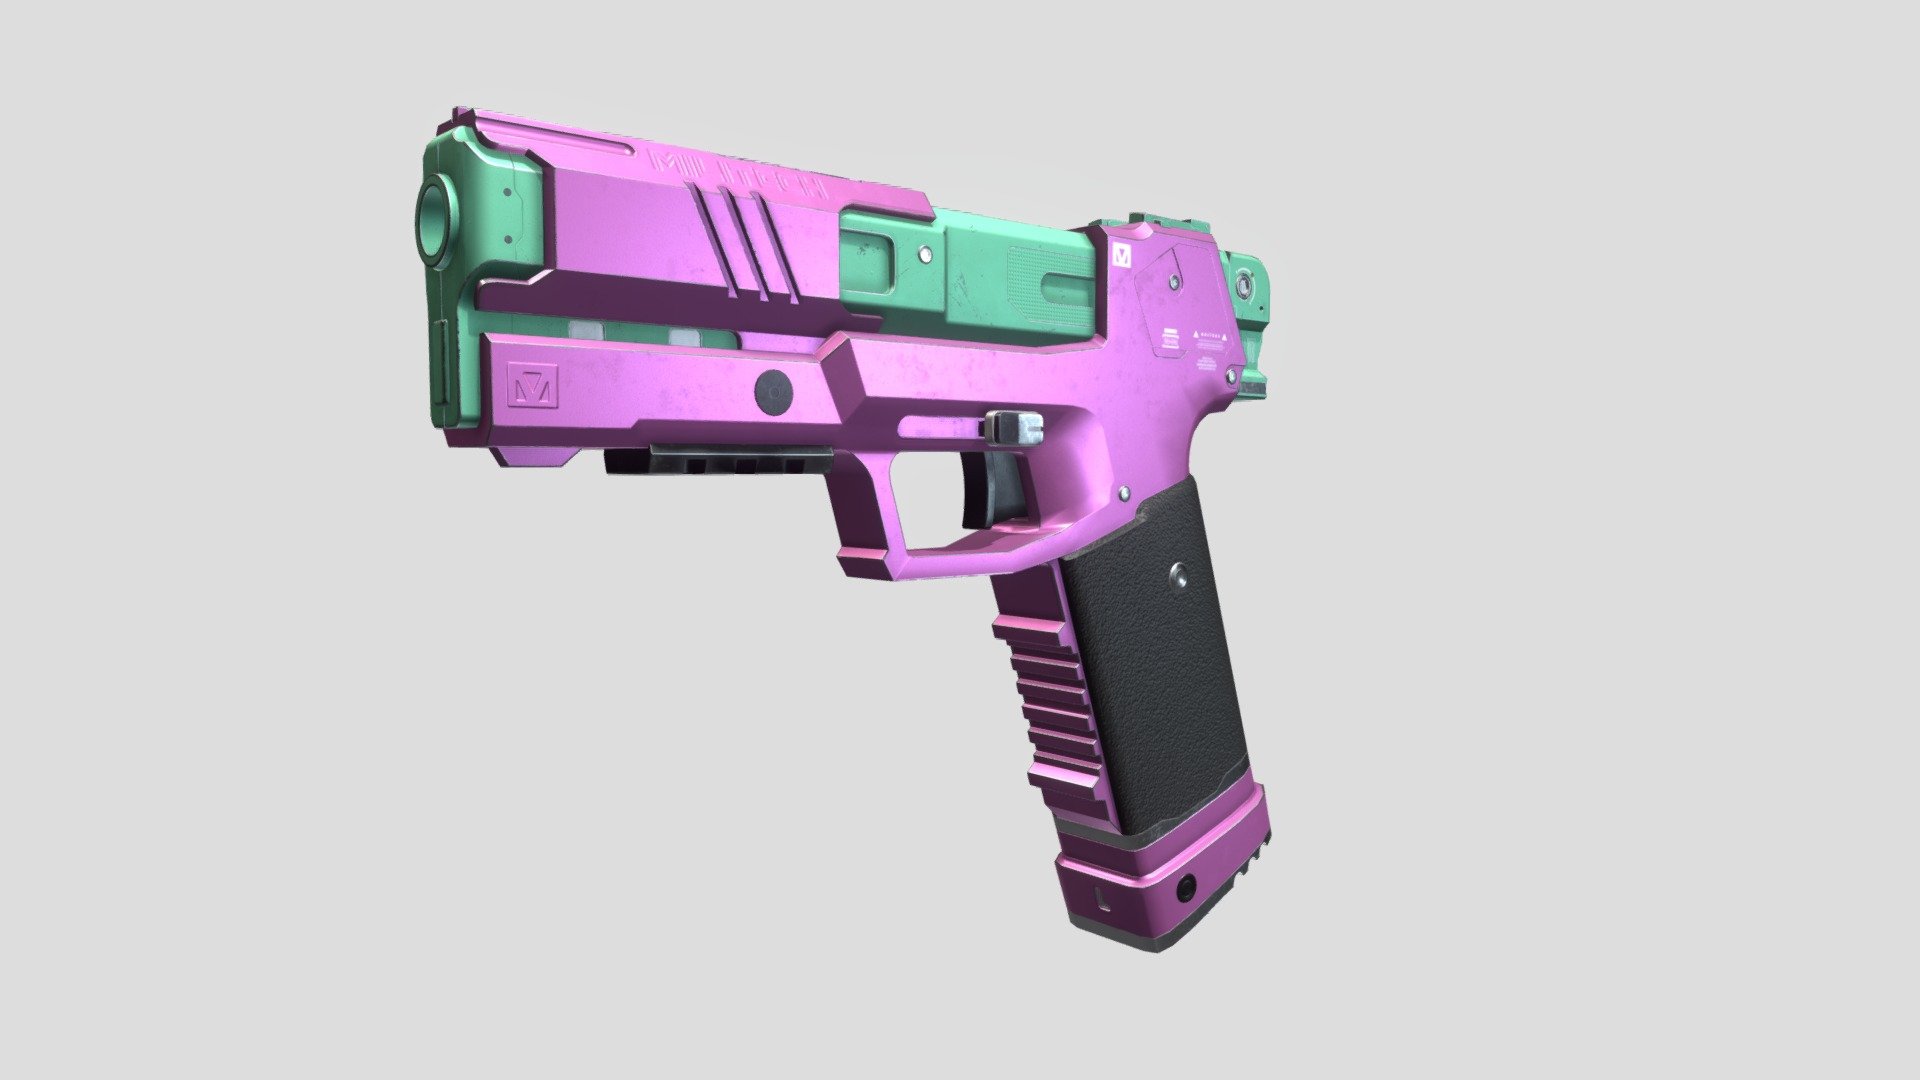 cyberpunk edgerunners rebecca pistol fans art - cyberpunk 2077 - MILITECH M-76E OMAHA - 3D model by ernielo18 3d model